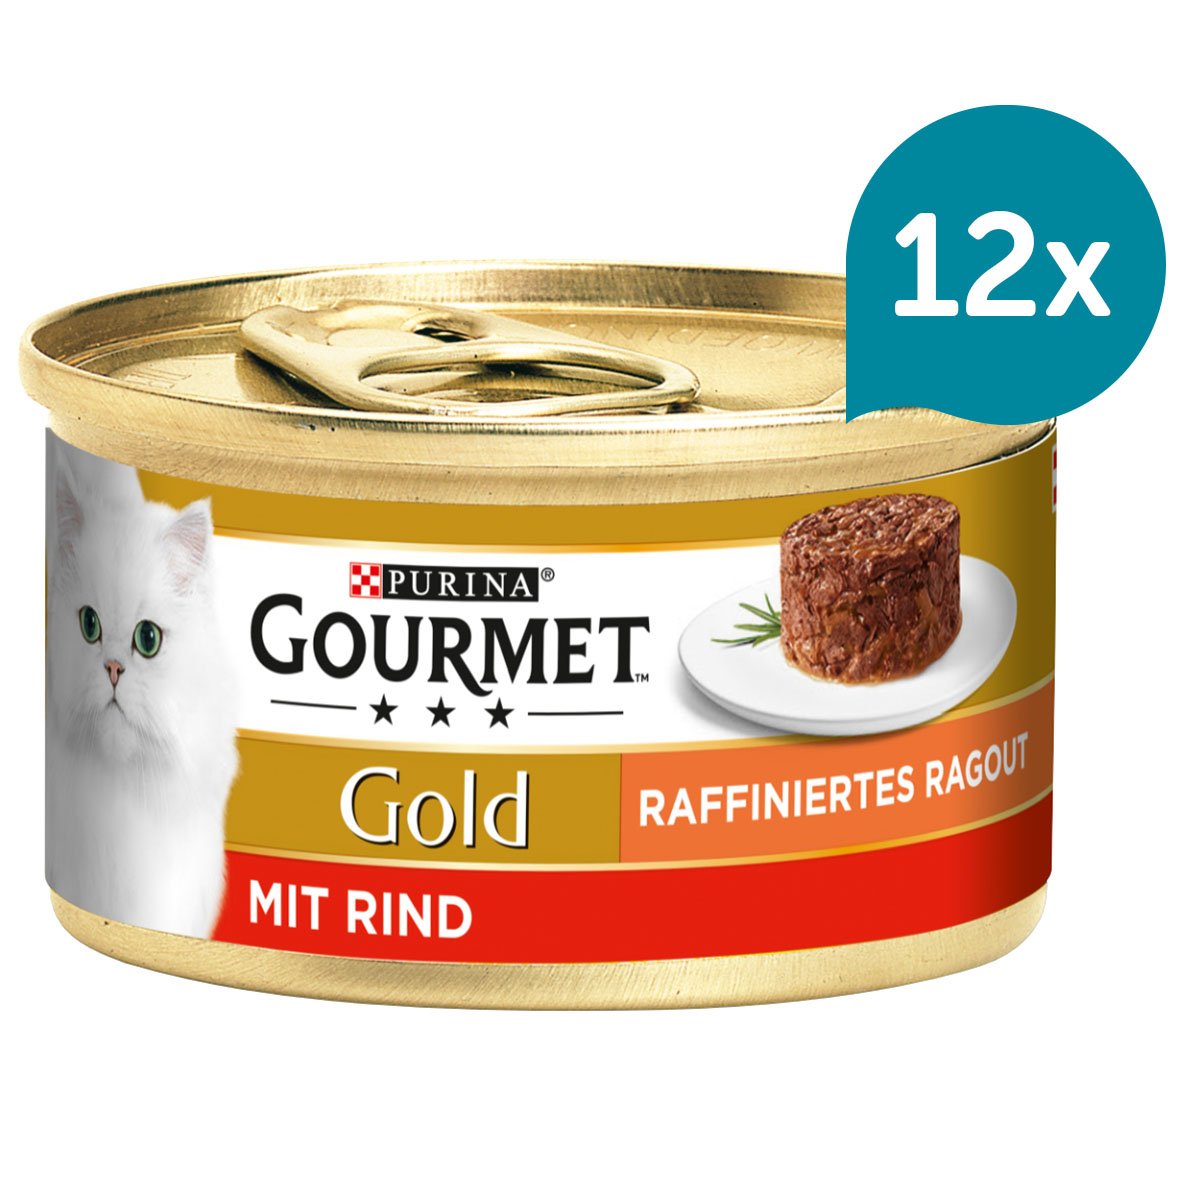 GOURMET Gold Raffiniertes Ragout mit Rind 12x85g von Gourmet